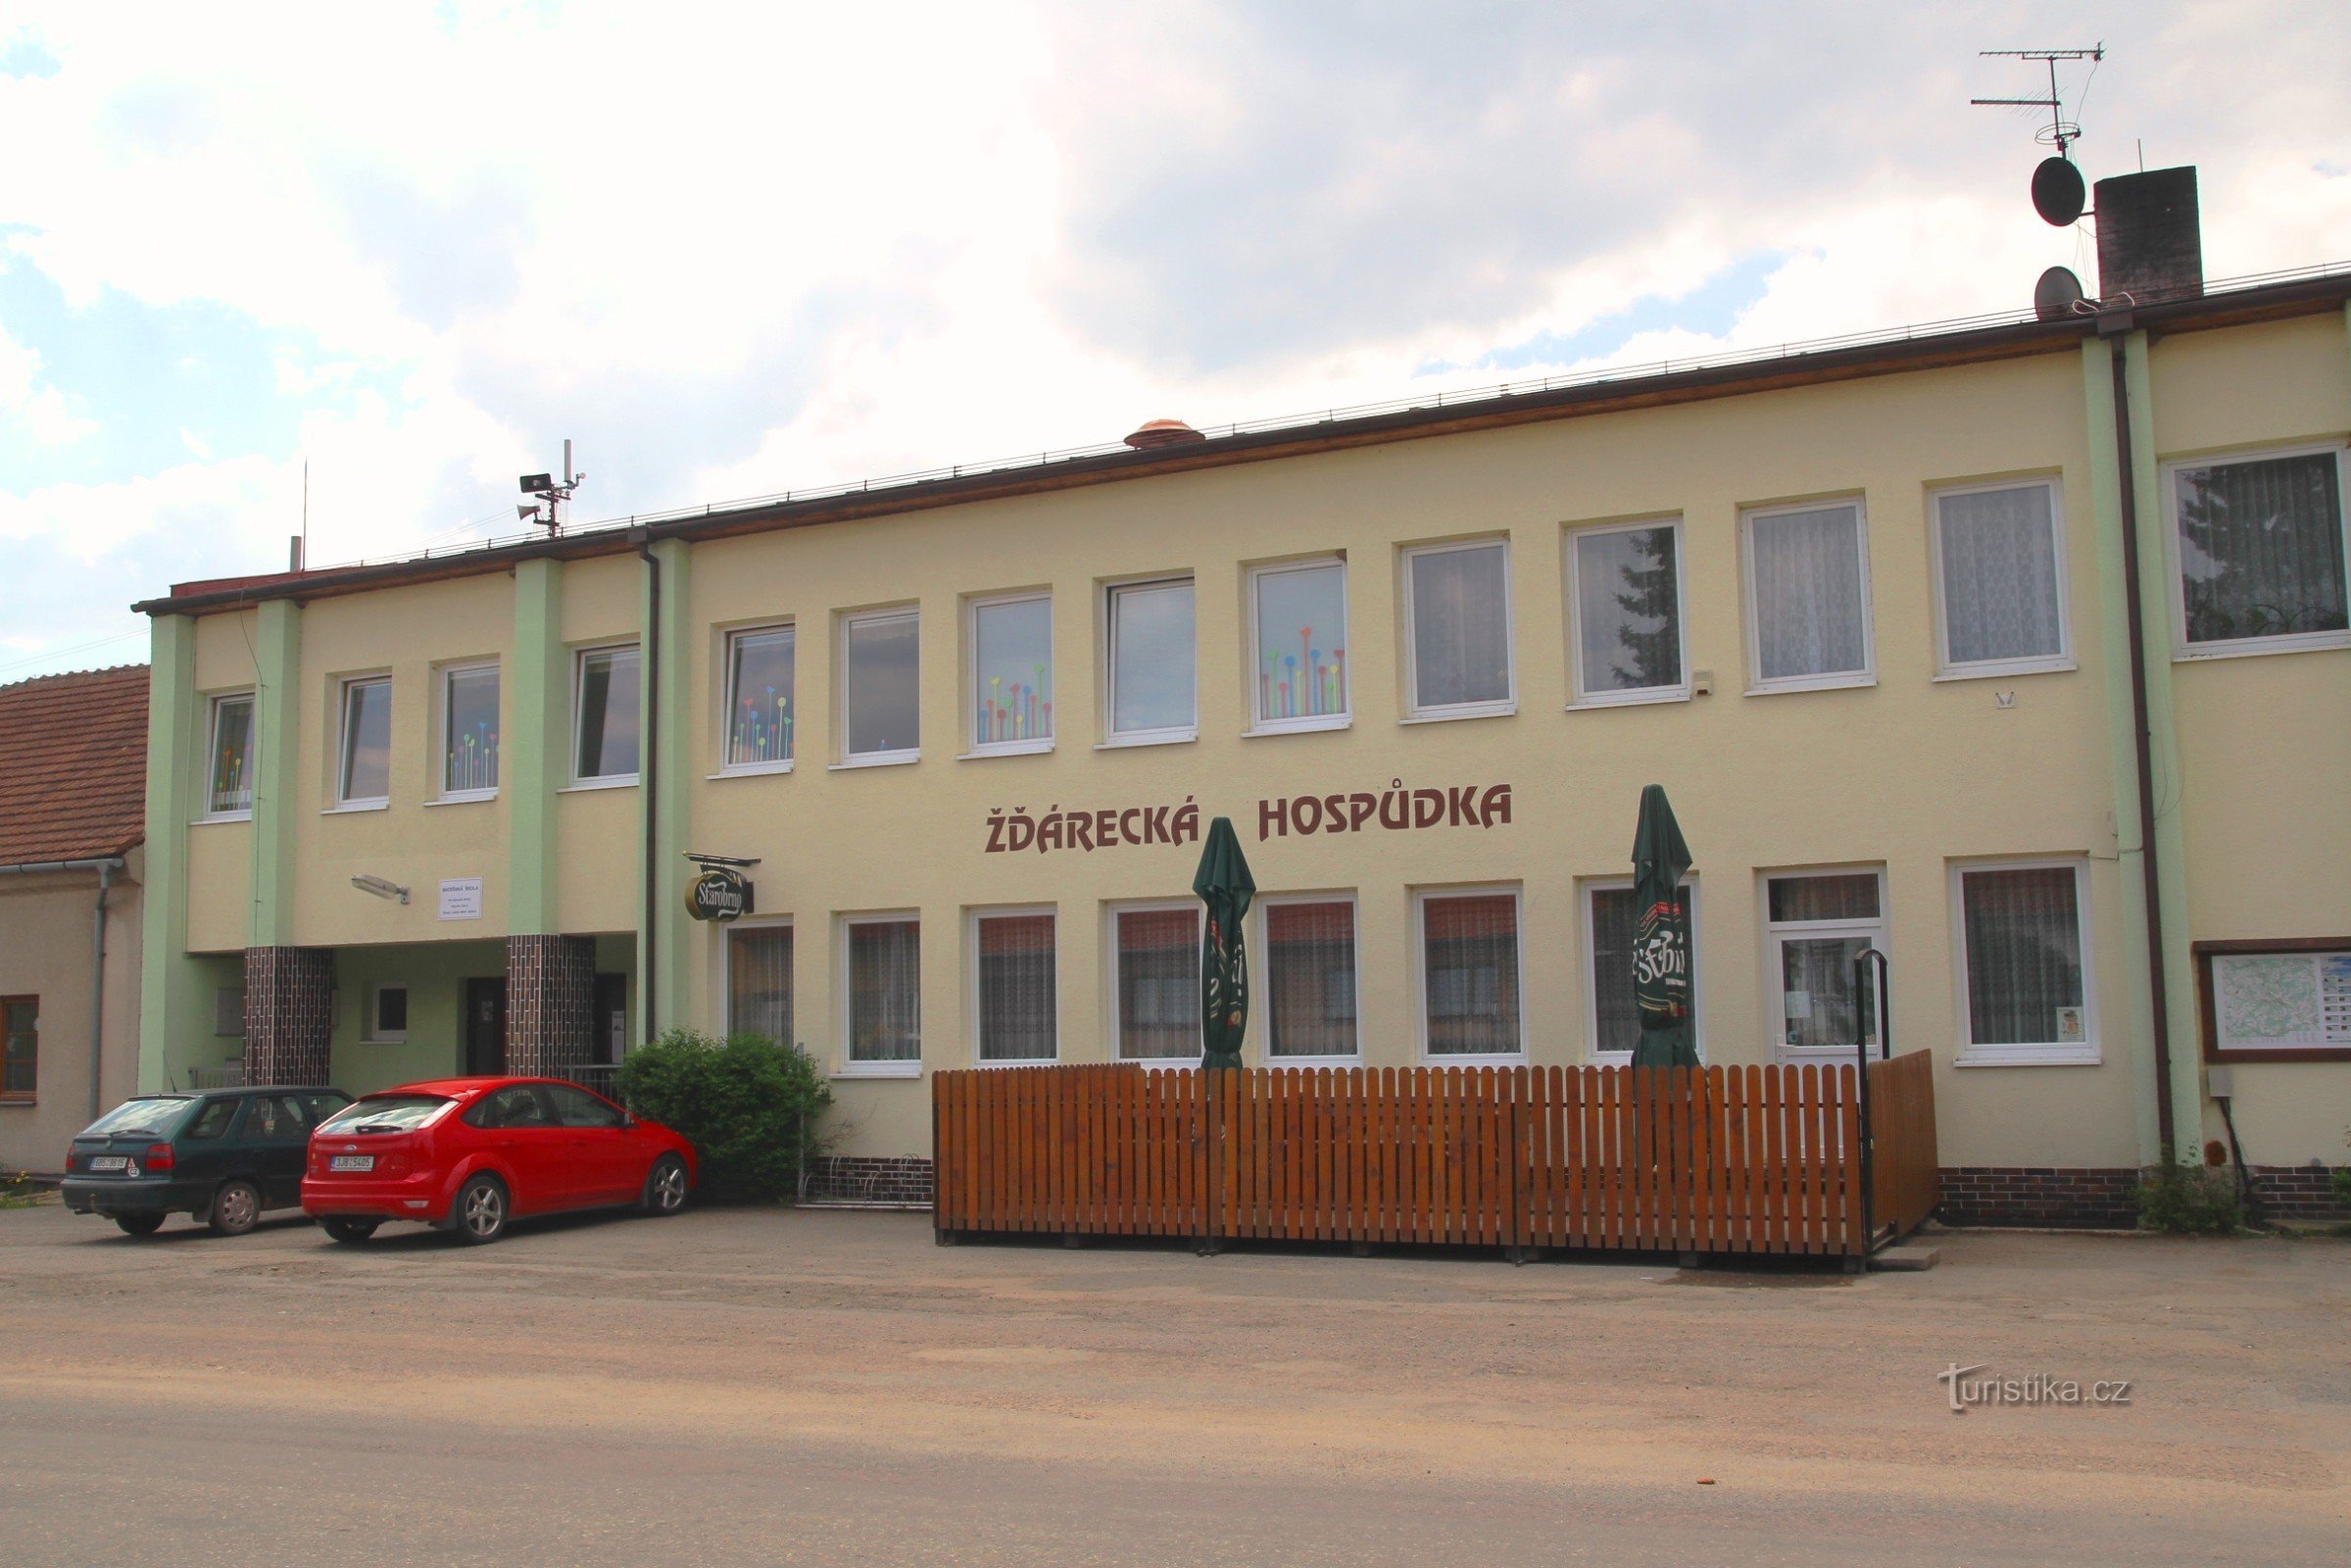 Žďáreckáパブはバス停の近くにあります